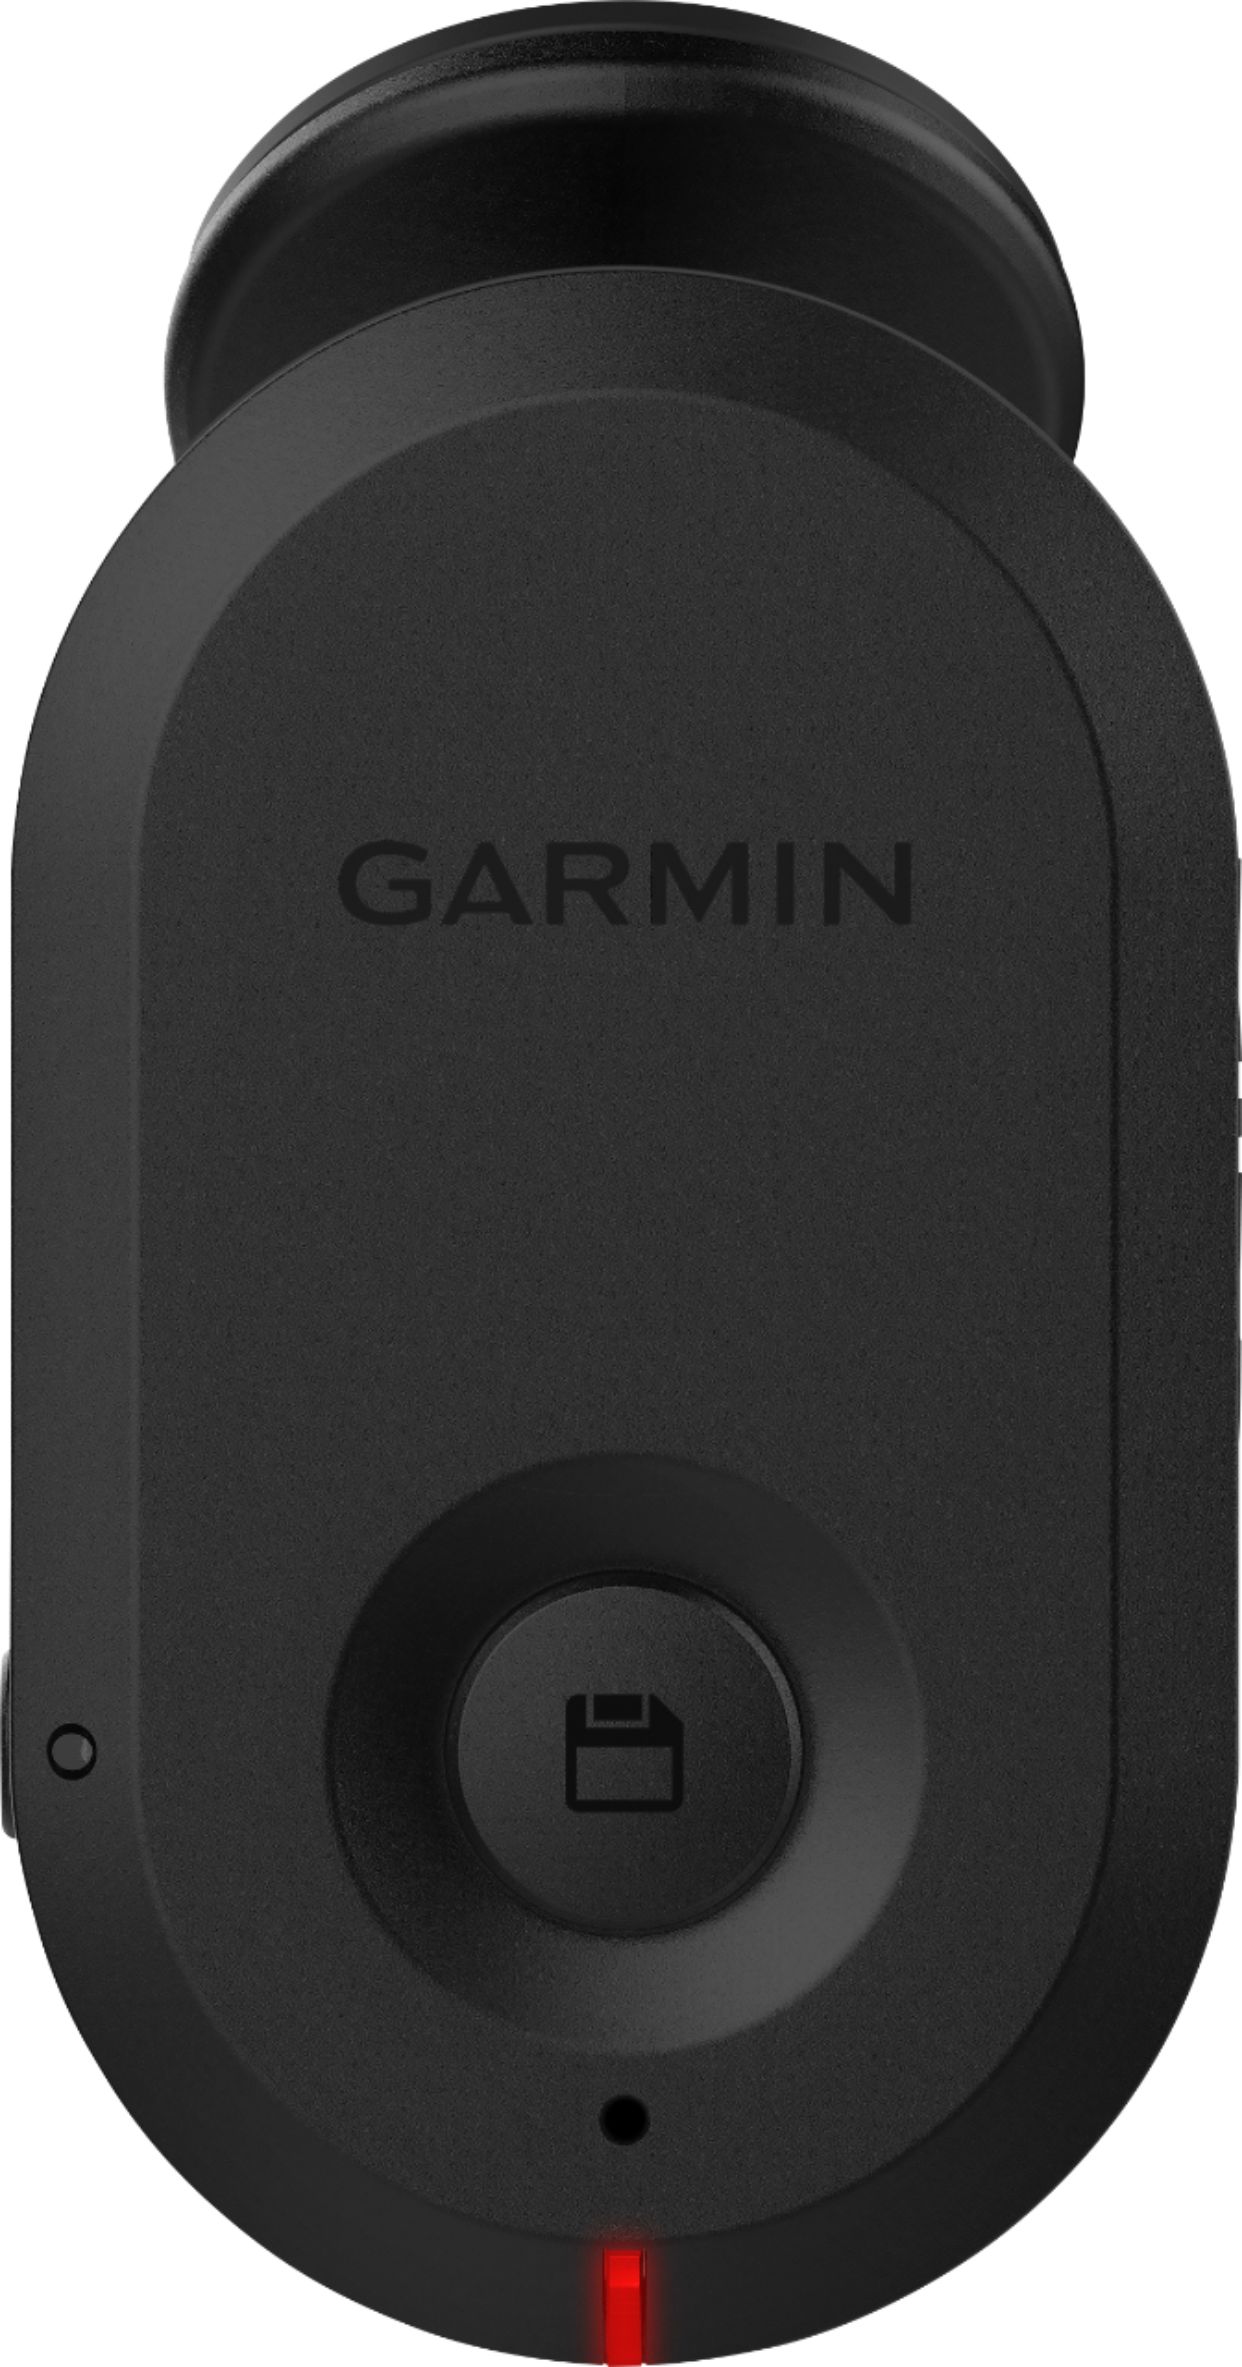 Best Buy: Garmin Mini Dash Cam 010-02062-00